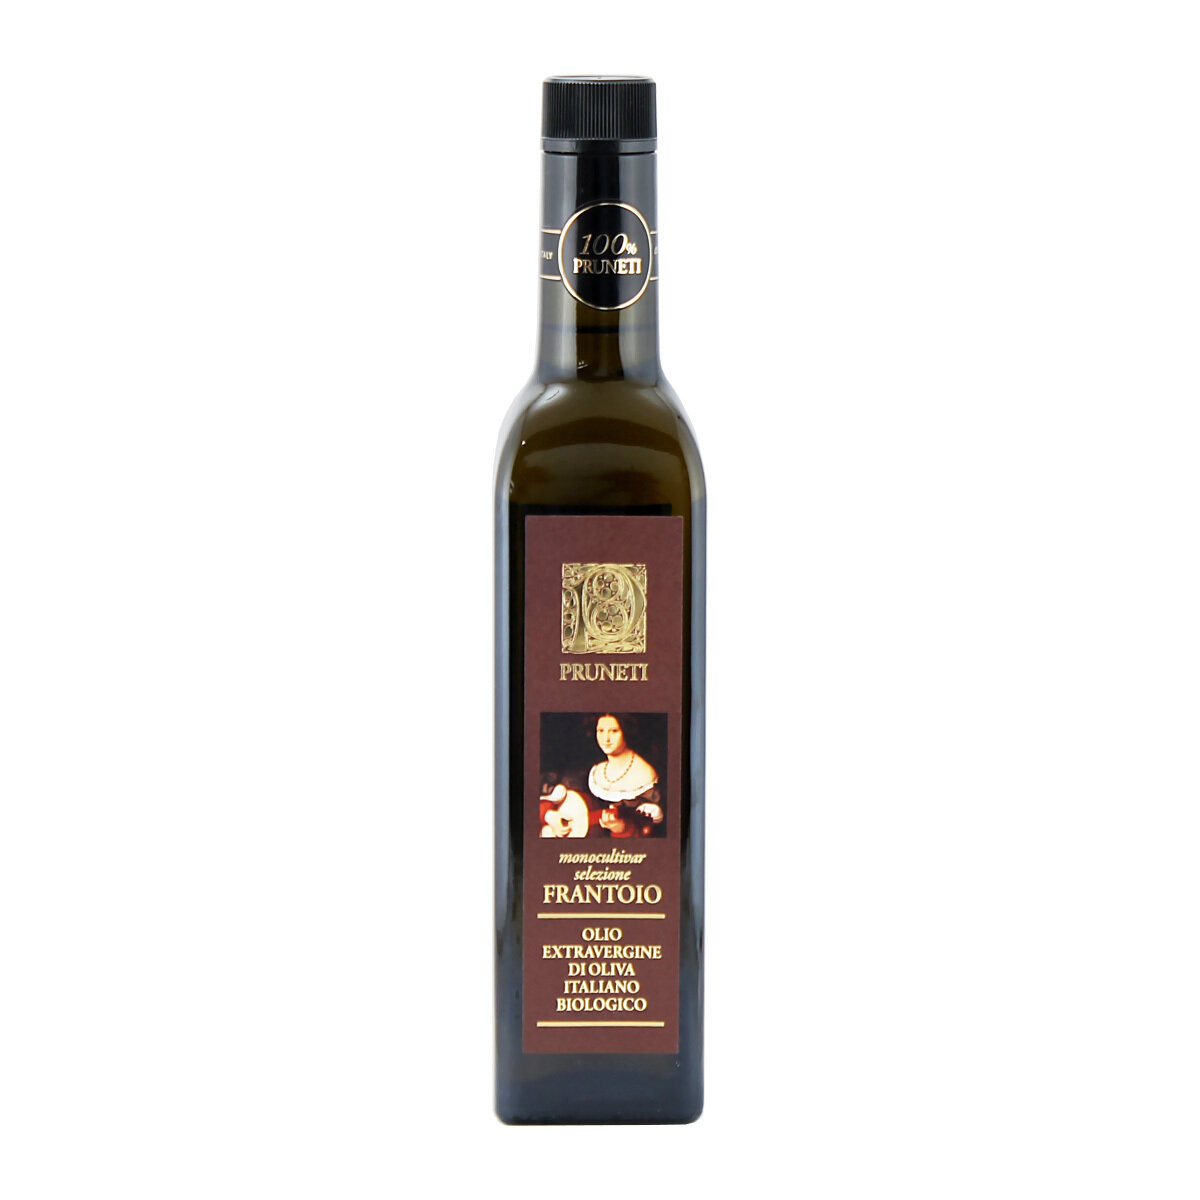 Luomu extra vergin -oliiviöljy Frantoio-oliiveja | PRUNETI | 500 ml